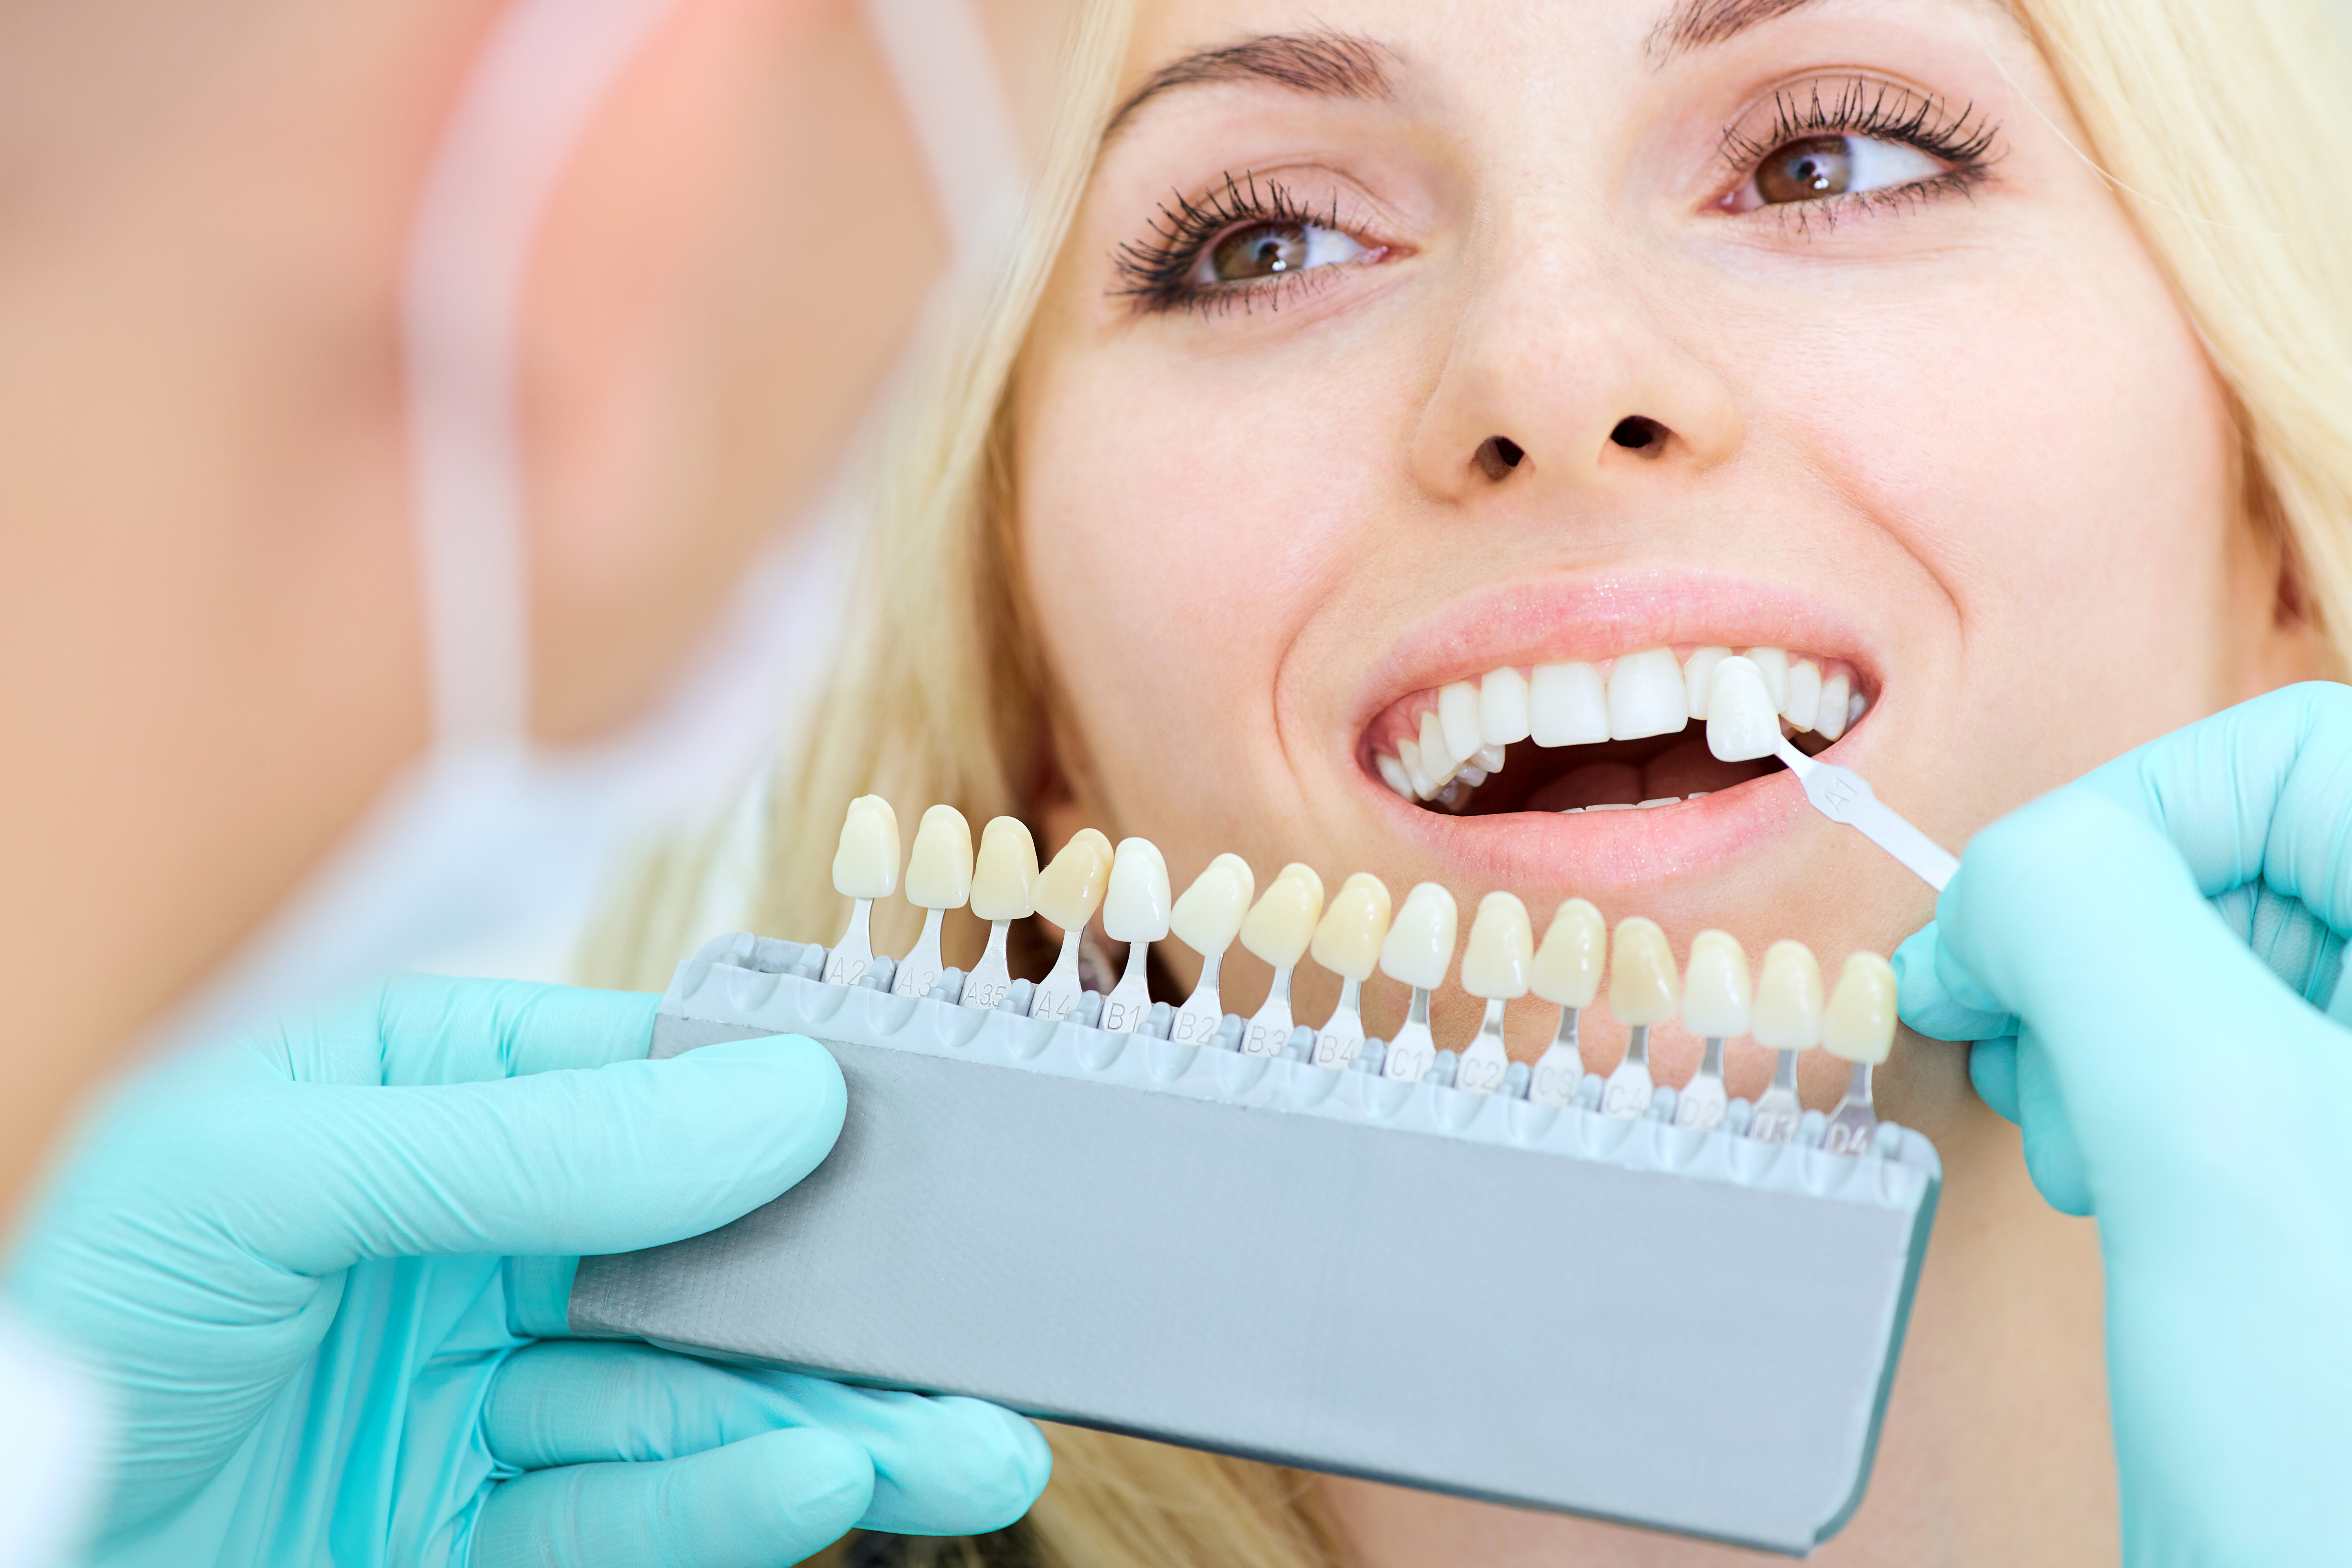 GSD-Teeth-Whitening-Methods-Blog